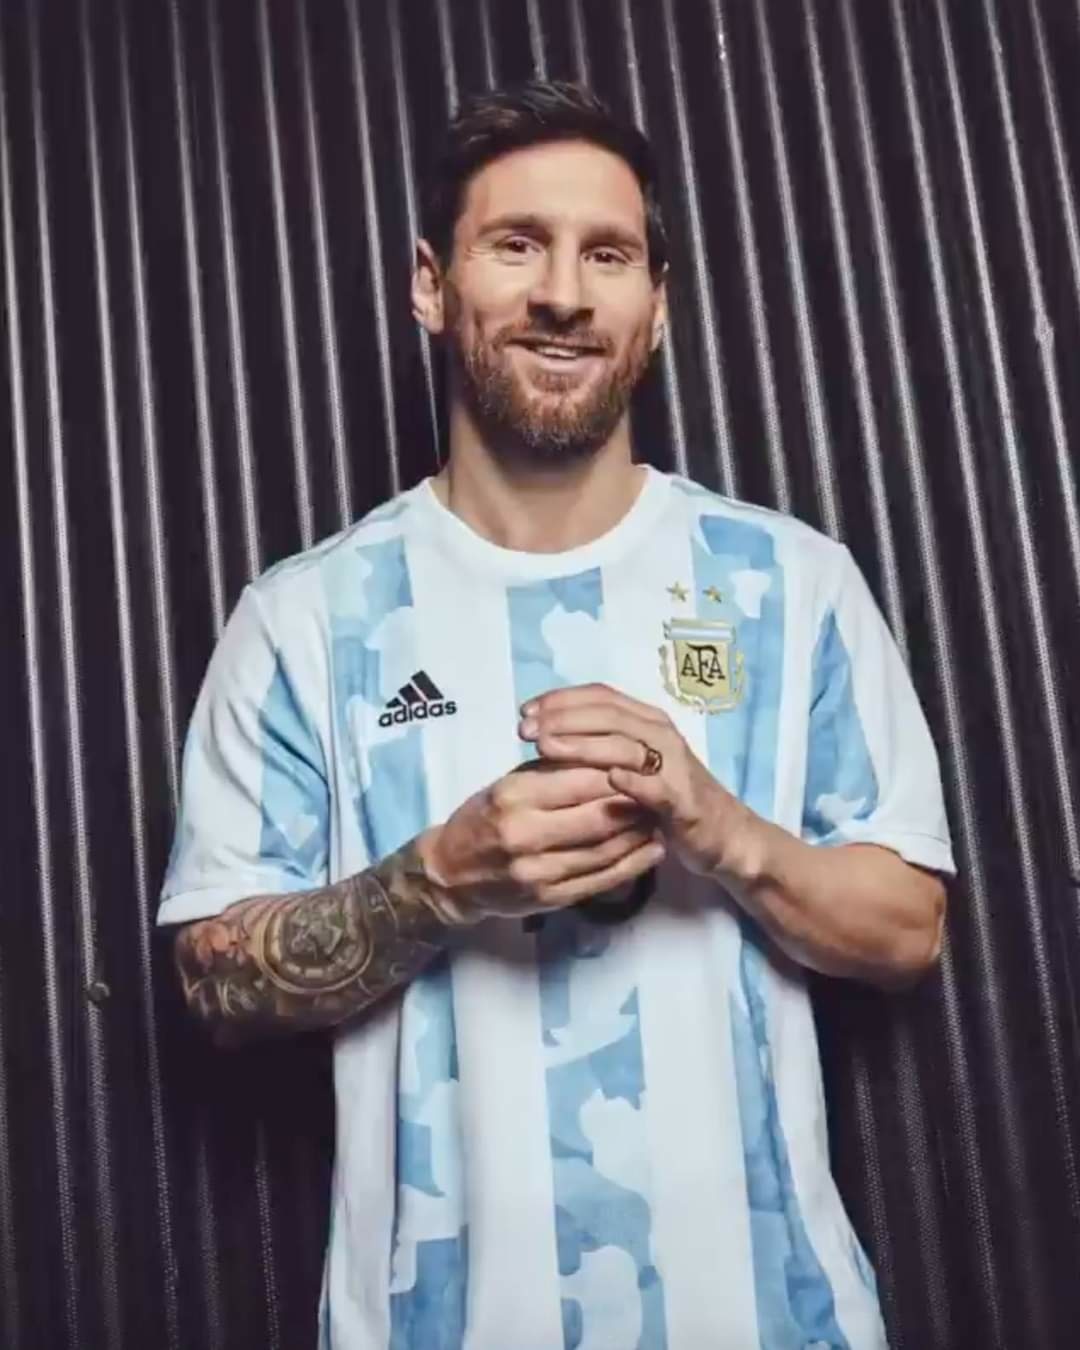 Nụ cười thường hay, nhưng không thể thiên về một cầu thủ bóng đá nào khác ngoài siêu sao Lionel Messi. Khi đích thân chứng kiến, sự tươi cười của anh ấy không giống bất kỳ ai khác. Hãy đến và cảm nhận chân thực về thần tượng của bạn trong những bức ảnh liên quan.